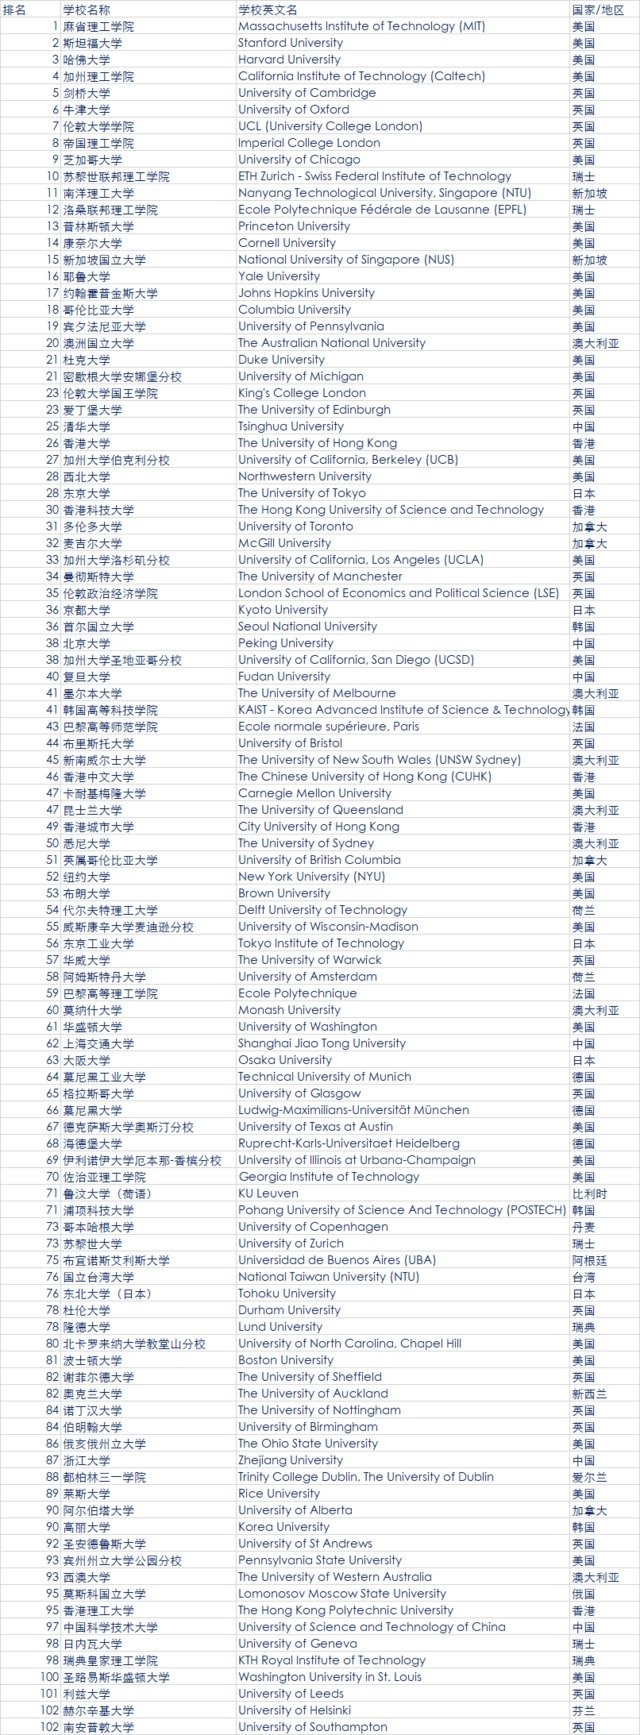 最新QS全球大学排名公布 中国大陆39所大学上榜2